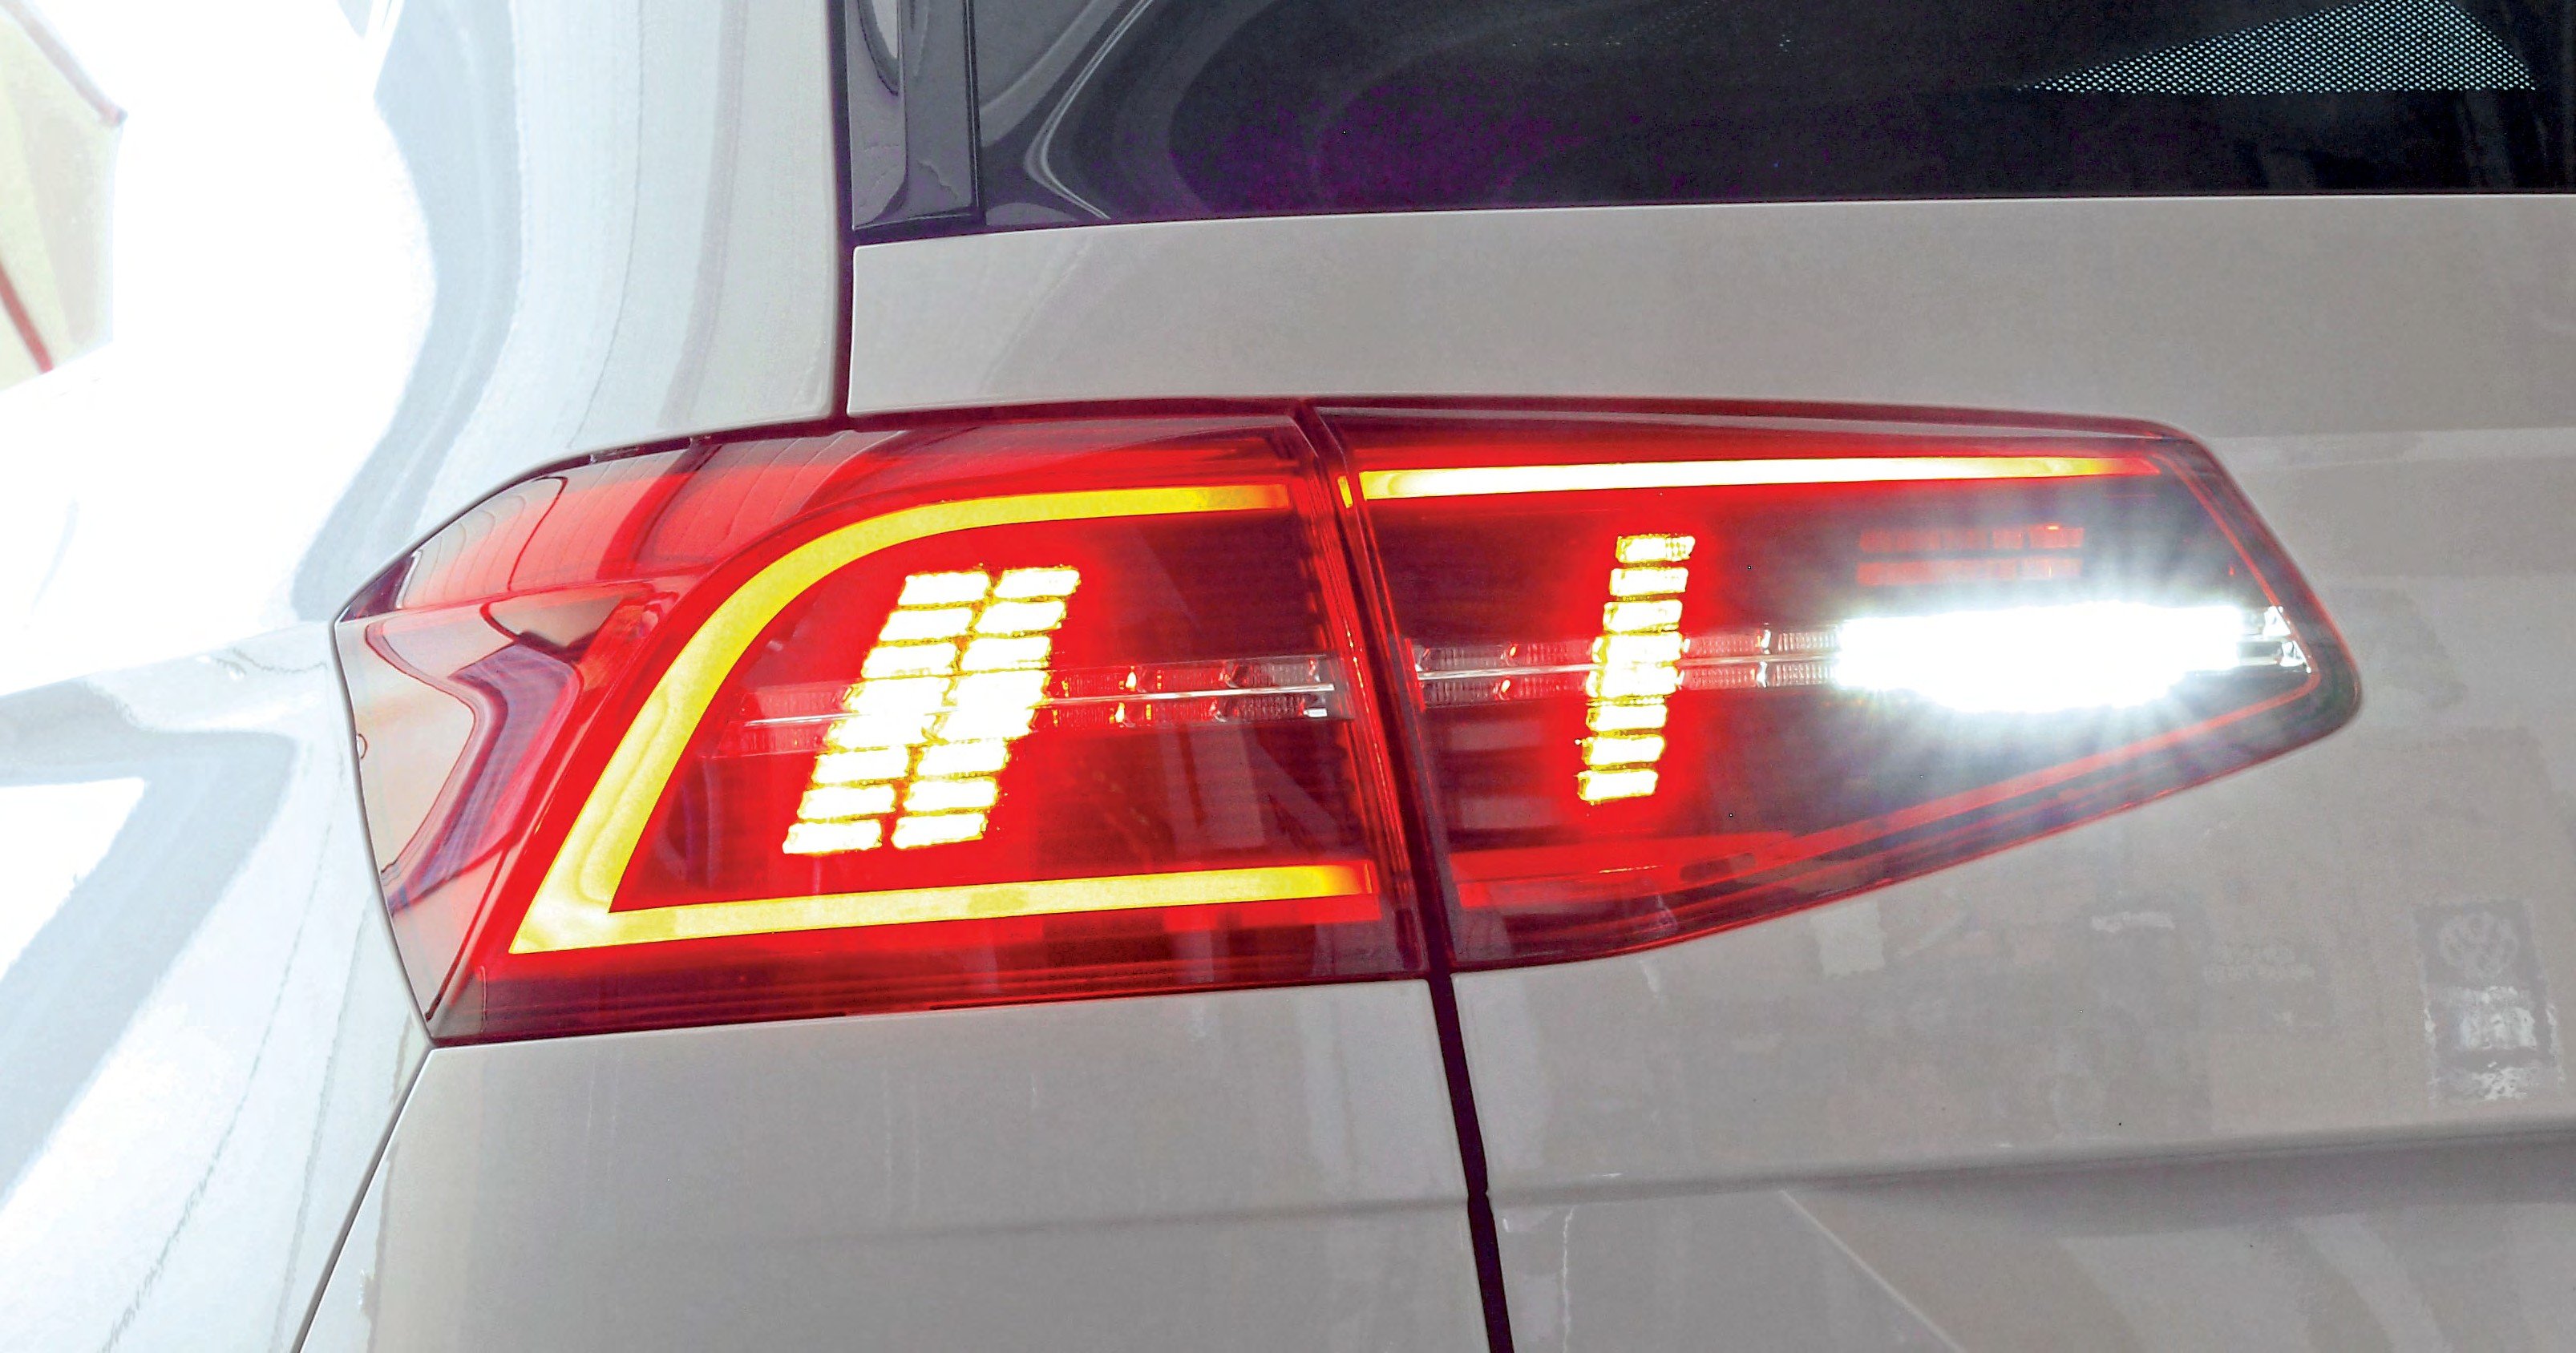 Passat-Facelift-Rückleuchten: Die schöneren LED -Rückleuchten